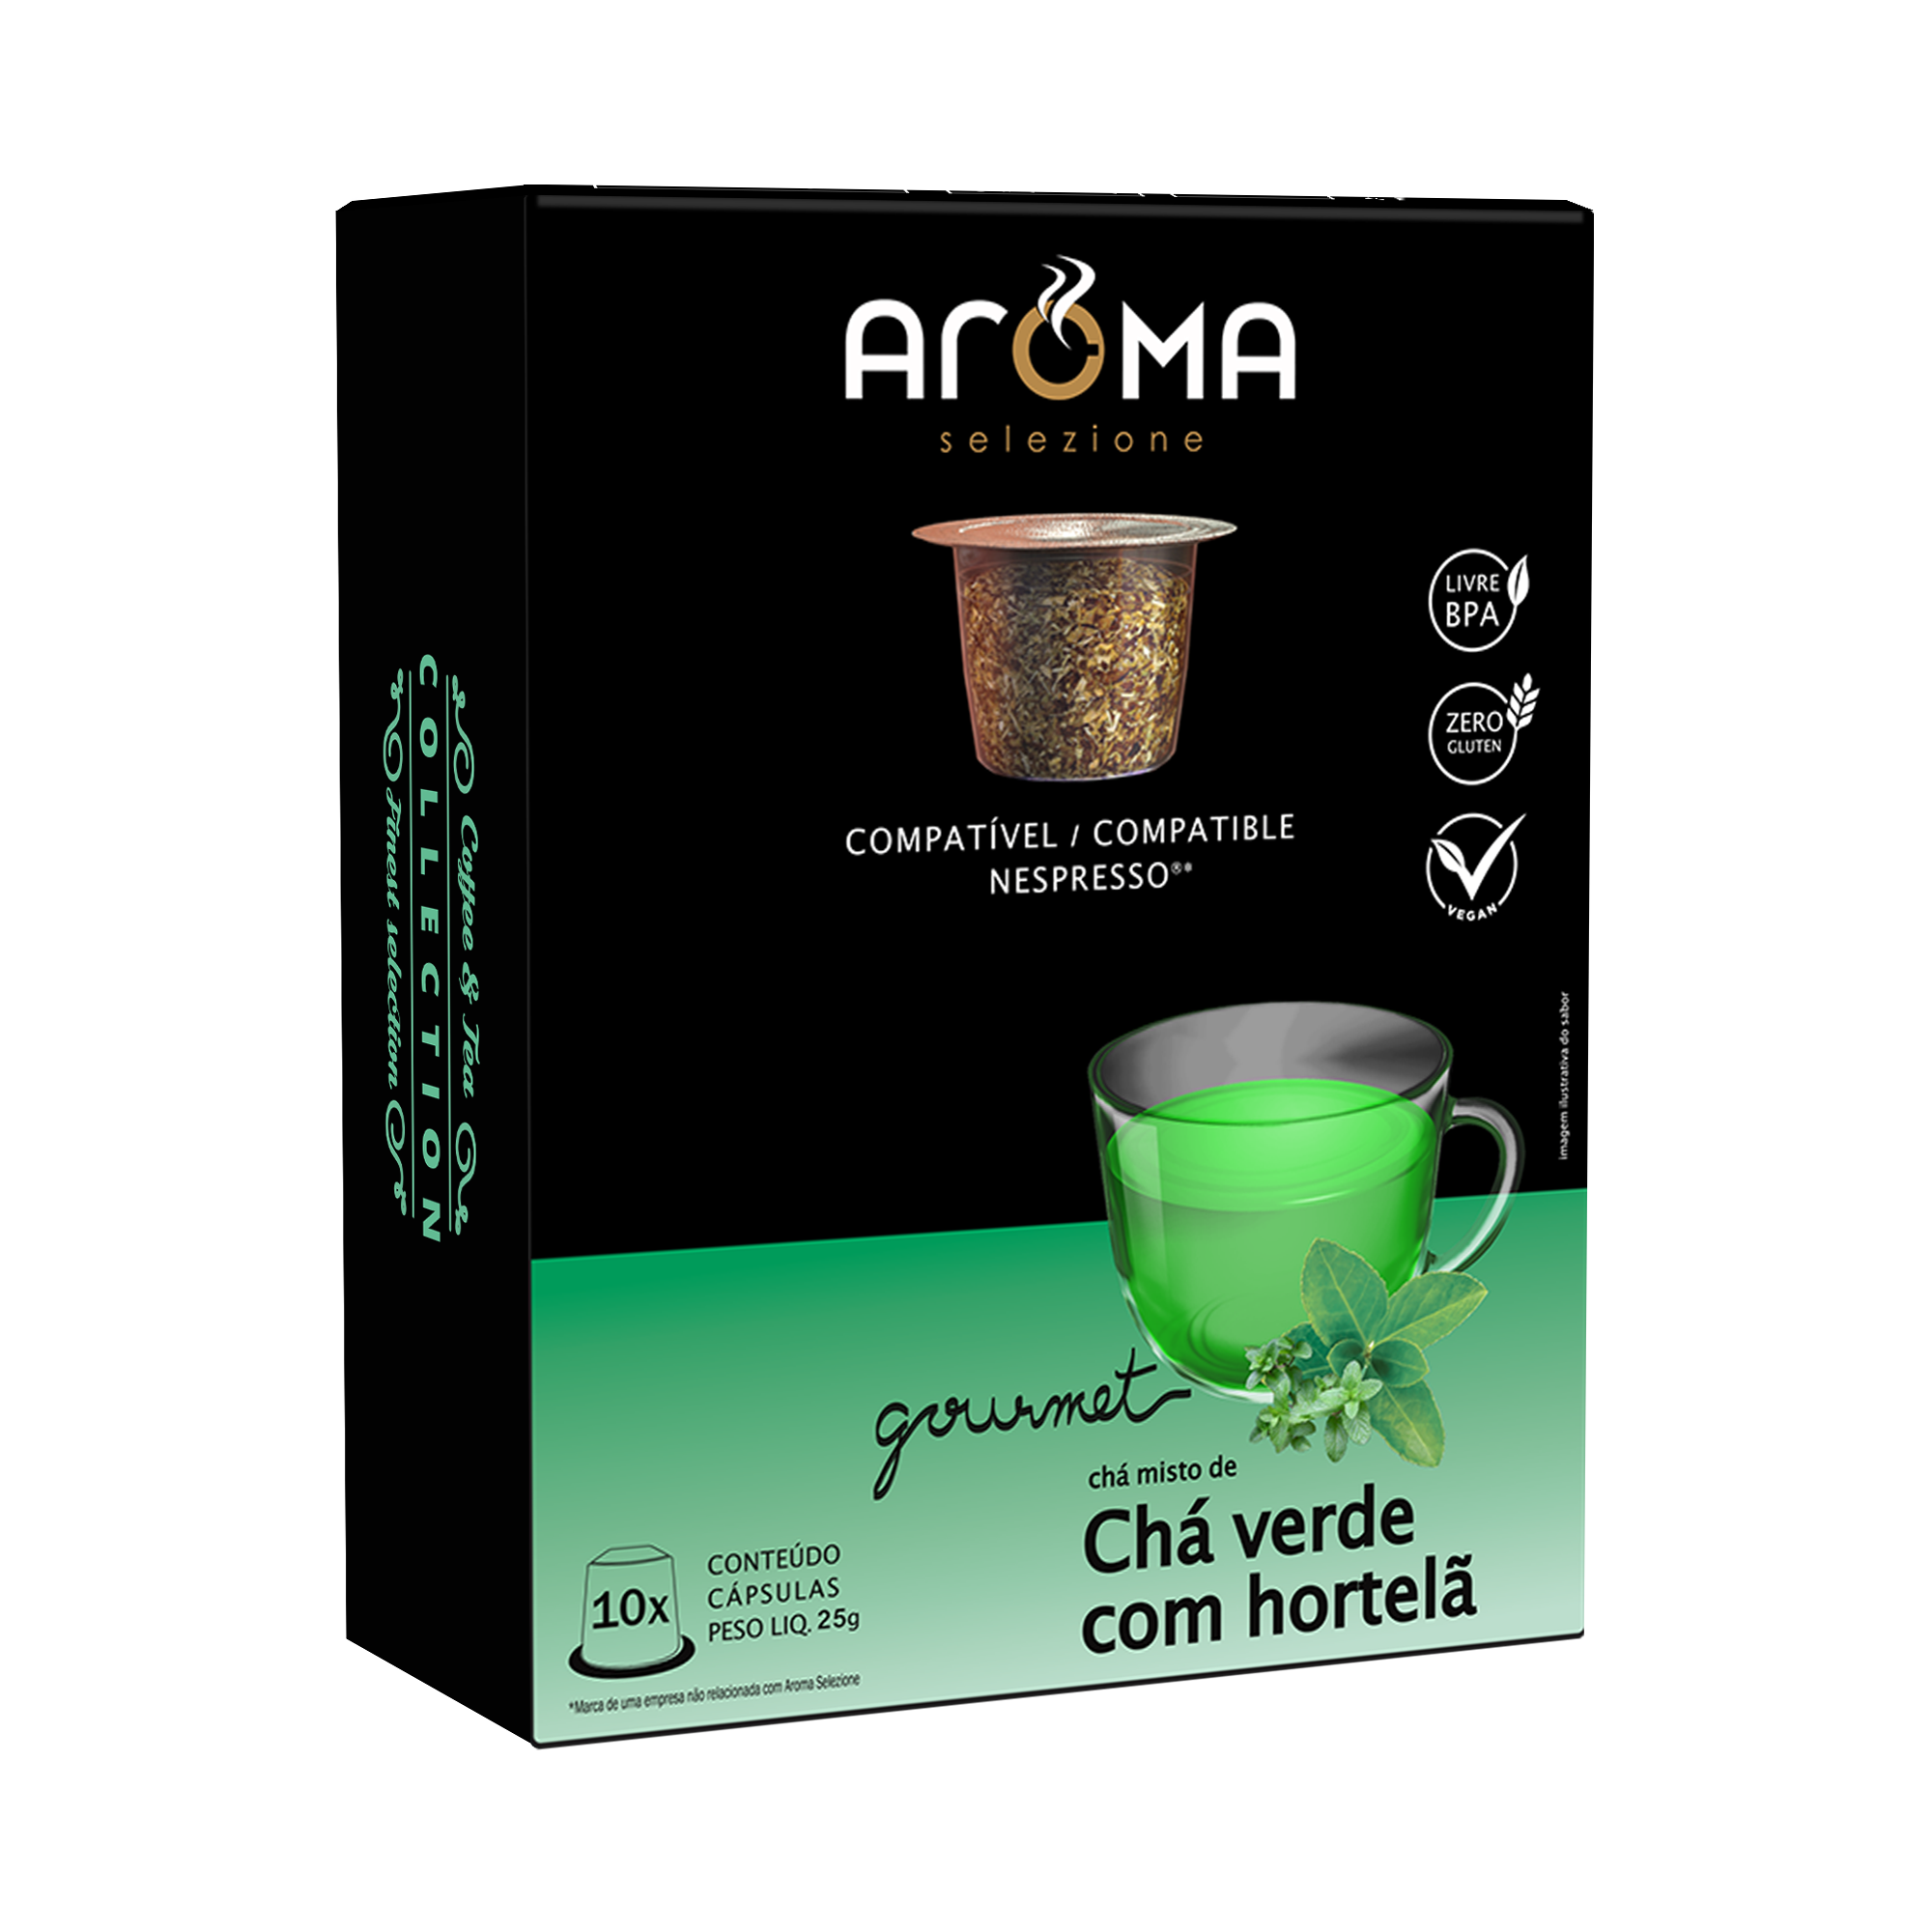 Caixa com 10 Cápsulas Para Nespresso ®* - Chá verde com hortelã